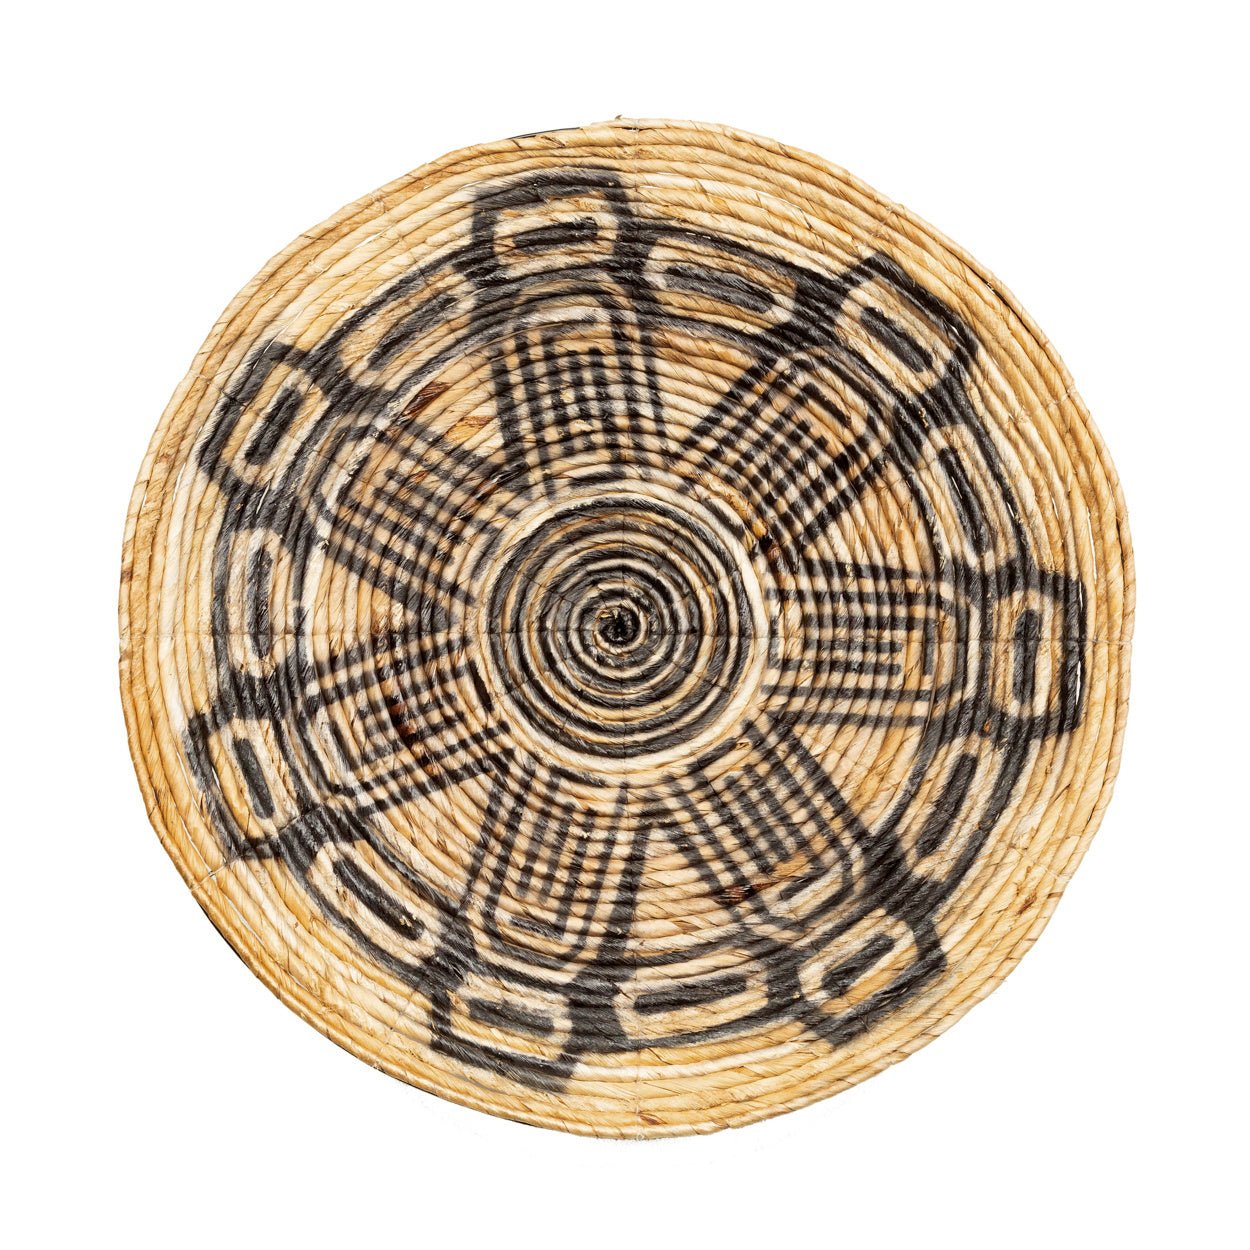 The Maya plate - medium